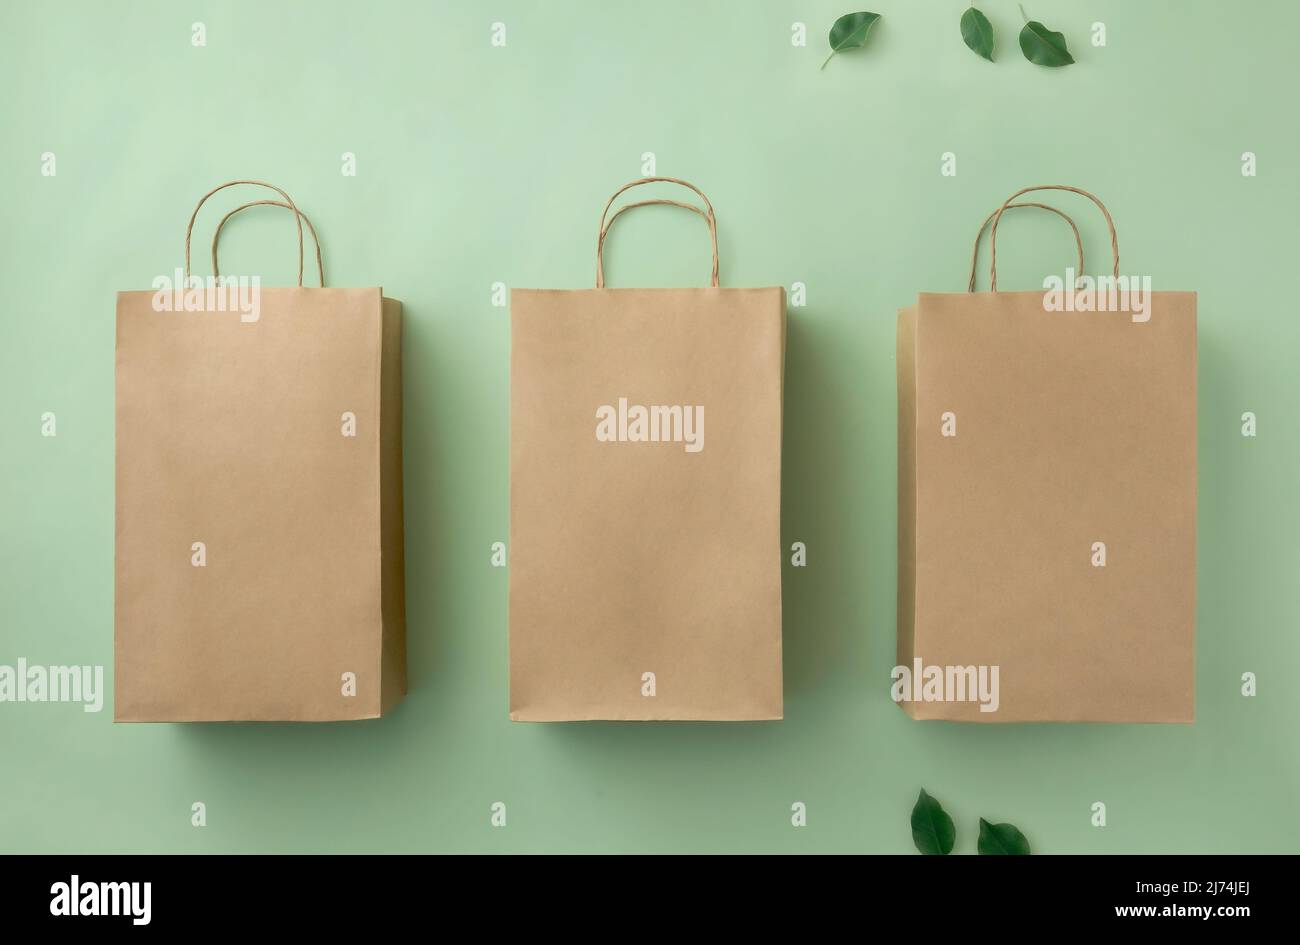 Trois sacs en carton brun sur fond vert et feuilles vertes. Concept d'achat vente et livraison de produit écologique. Banque D'Images